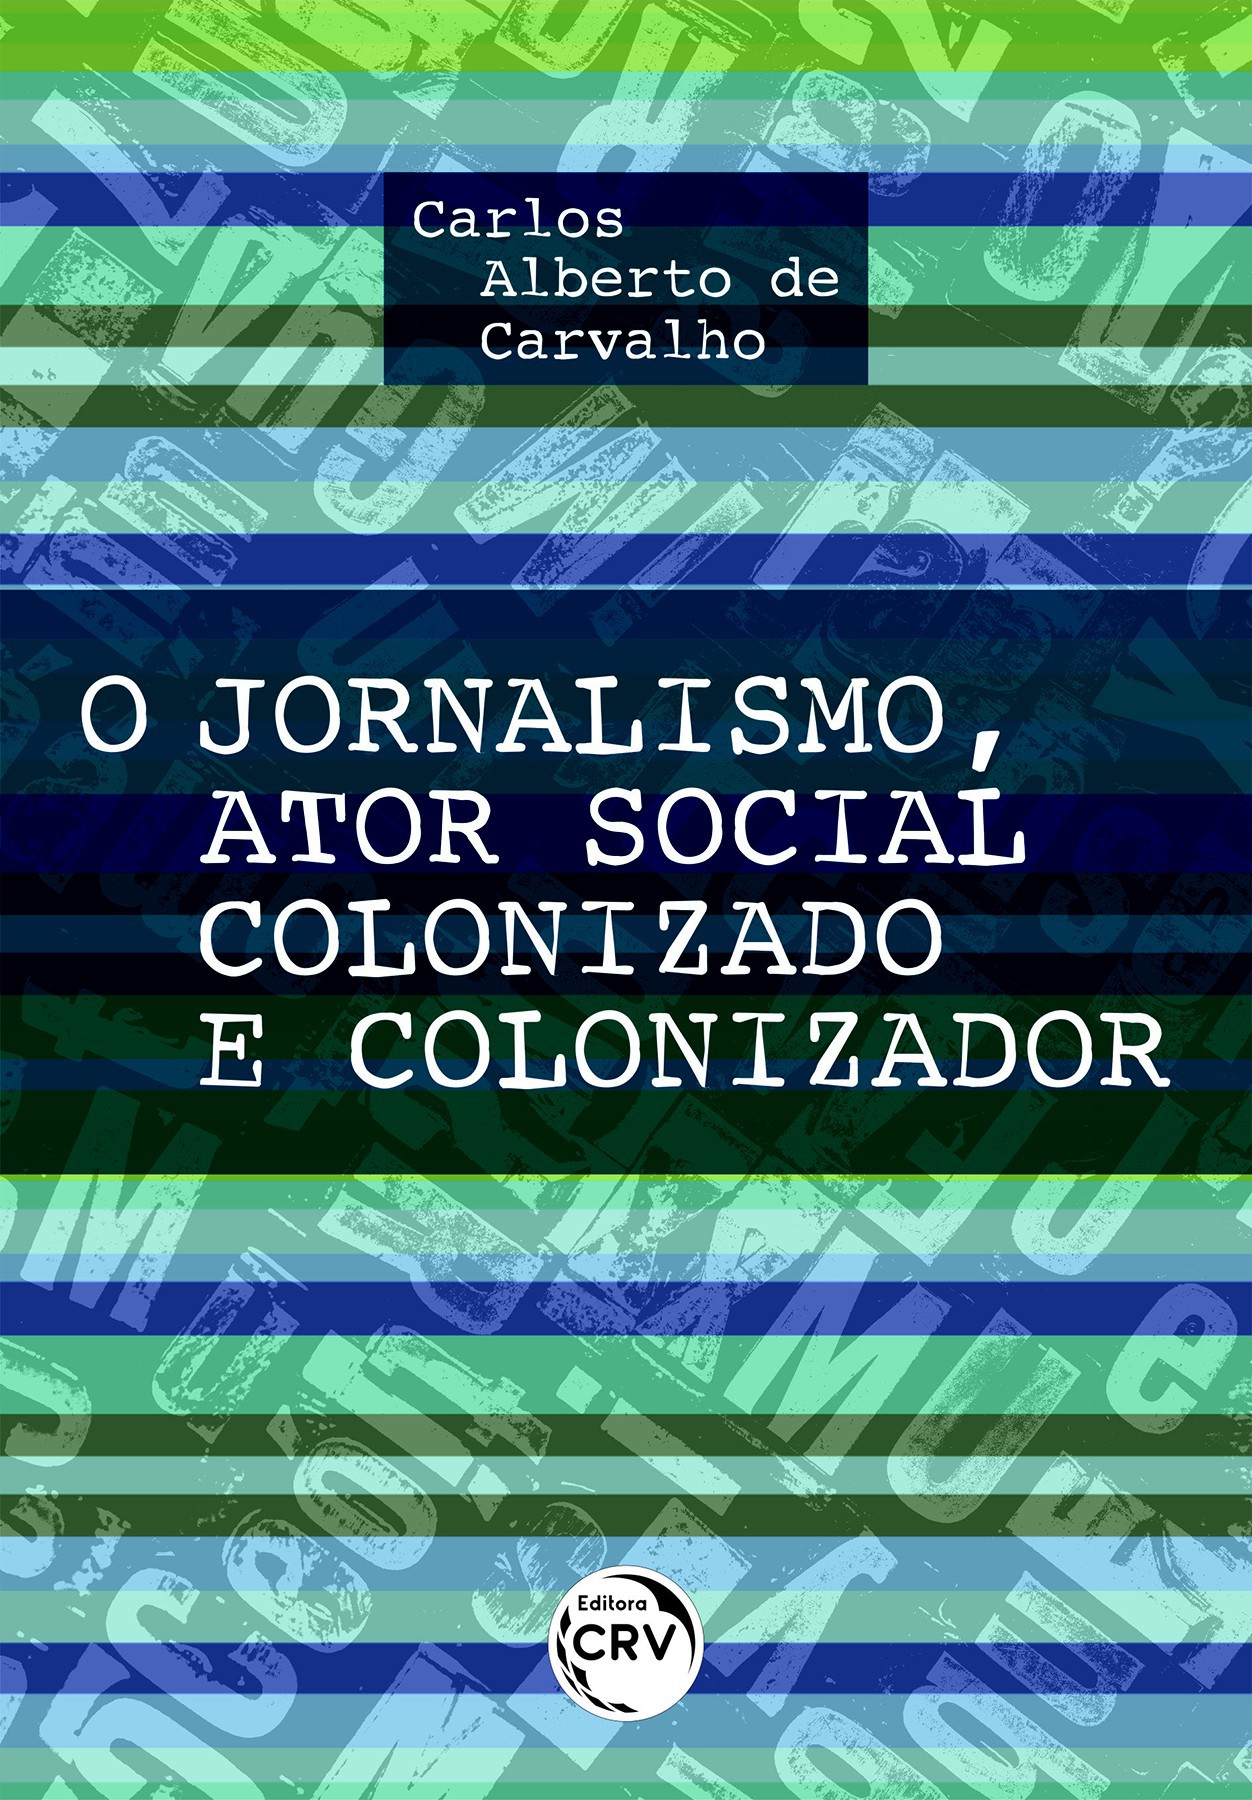 Capa do livro recém lançado pela Editora CRV